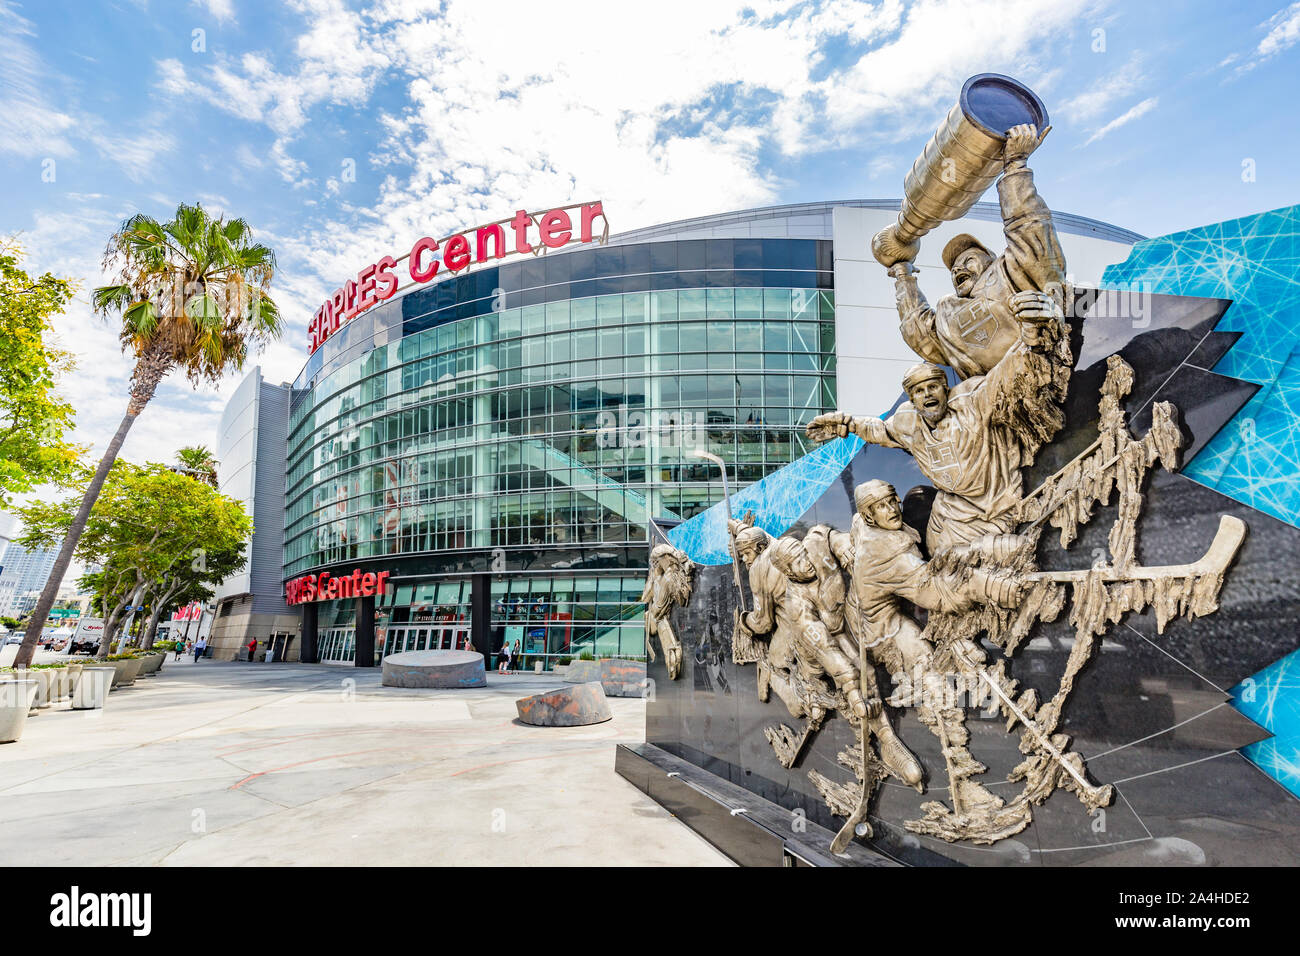 Vue extérieure du Staples Center dans le centre-ville de Los Angeles, Californie est une salle de concerts et de sports arena Banque D'Images